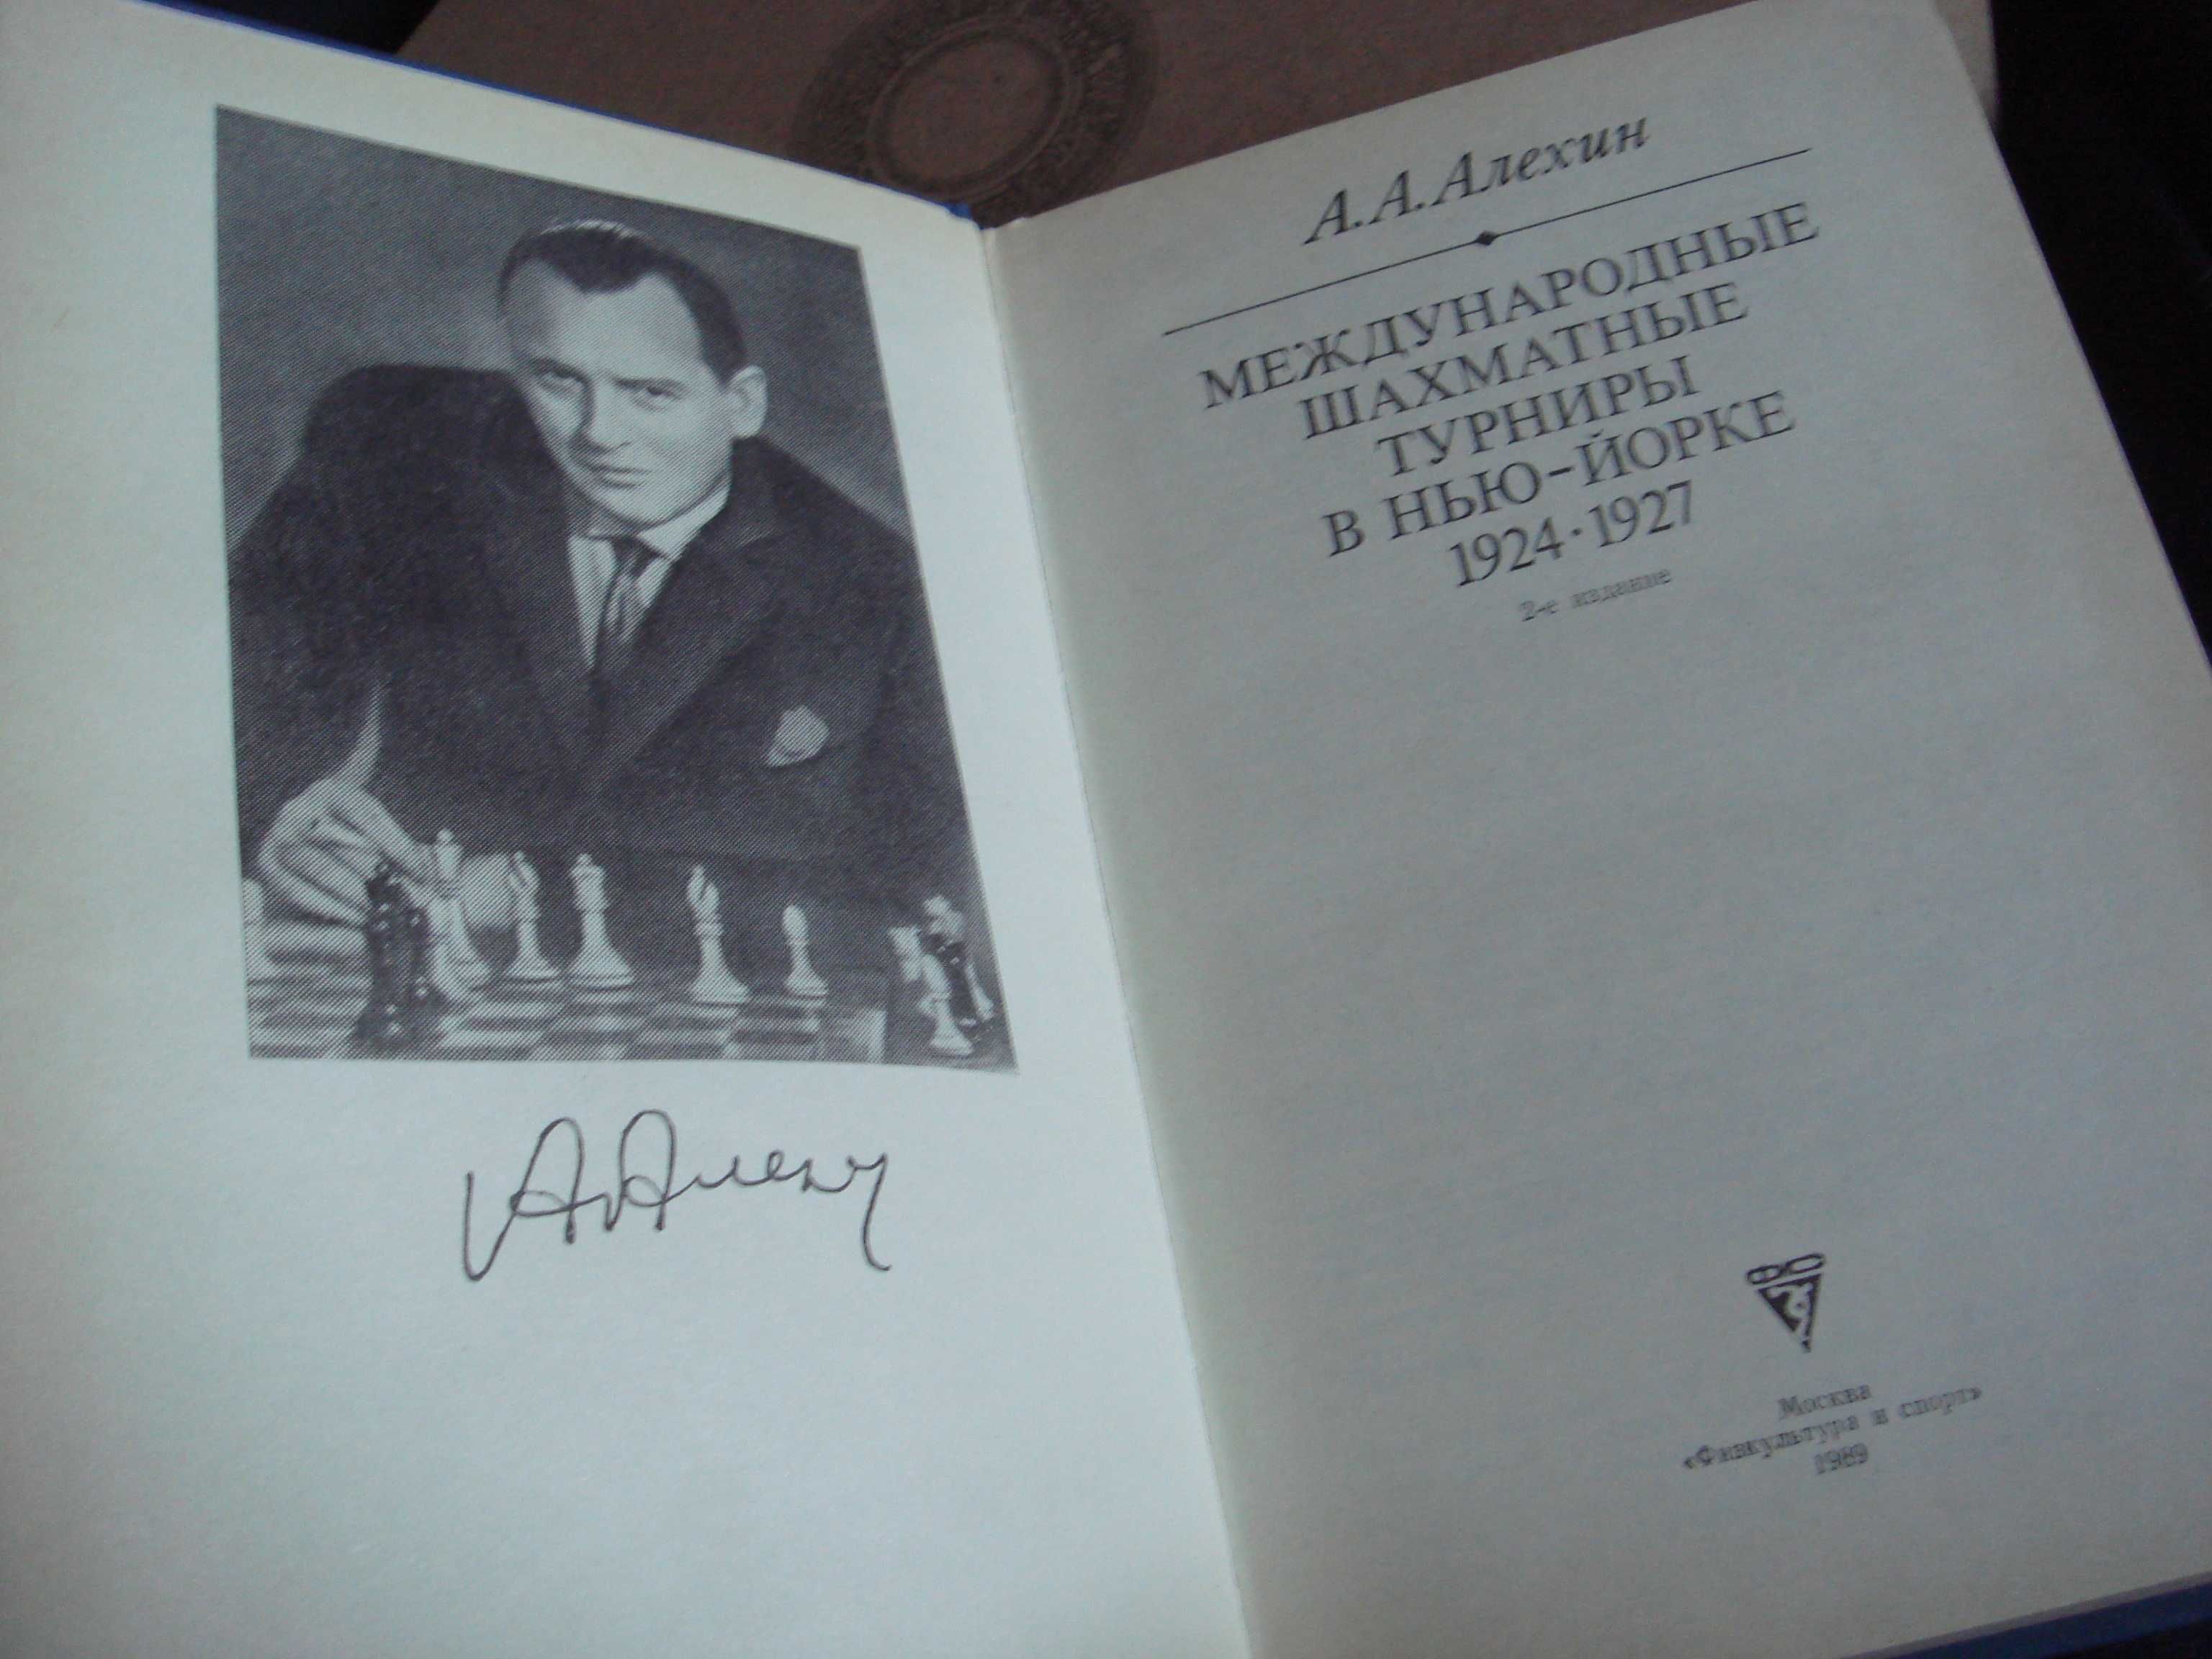 Книга А.А. Алехин Международные шахматные турниры в Нью-Йорке.1924 -27